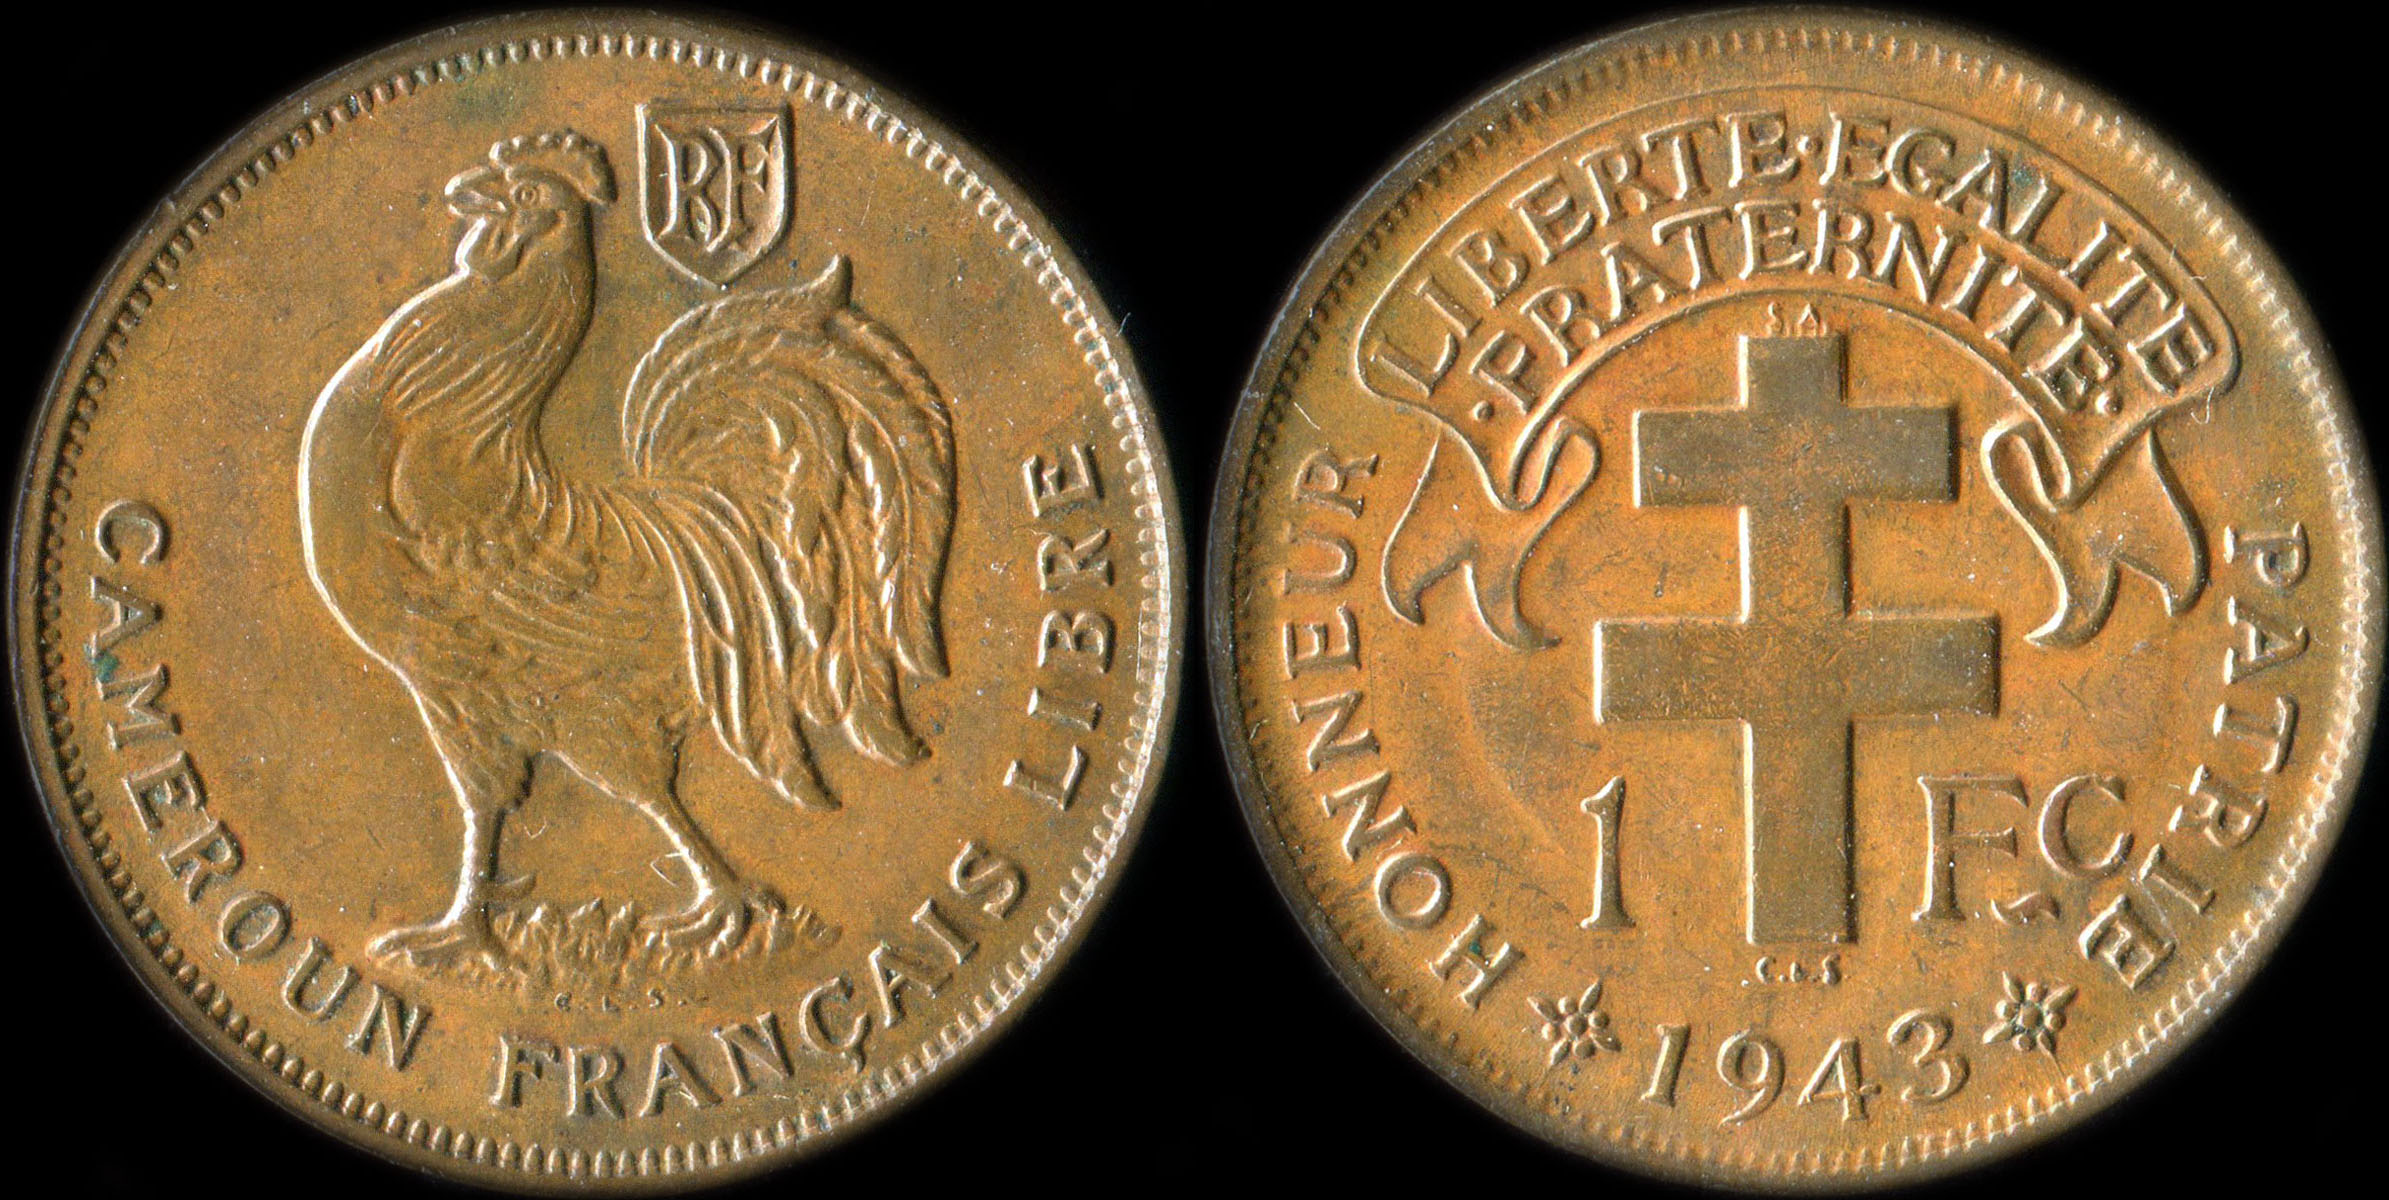 Pice de 1 franc 1943 Cameroun Franais Libre